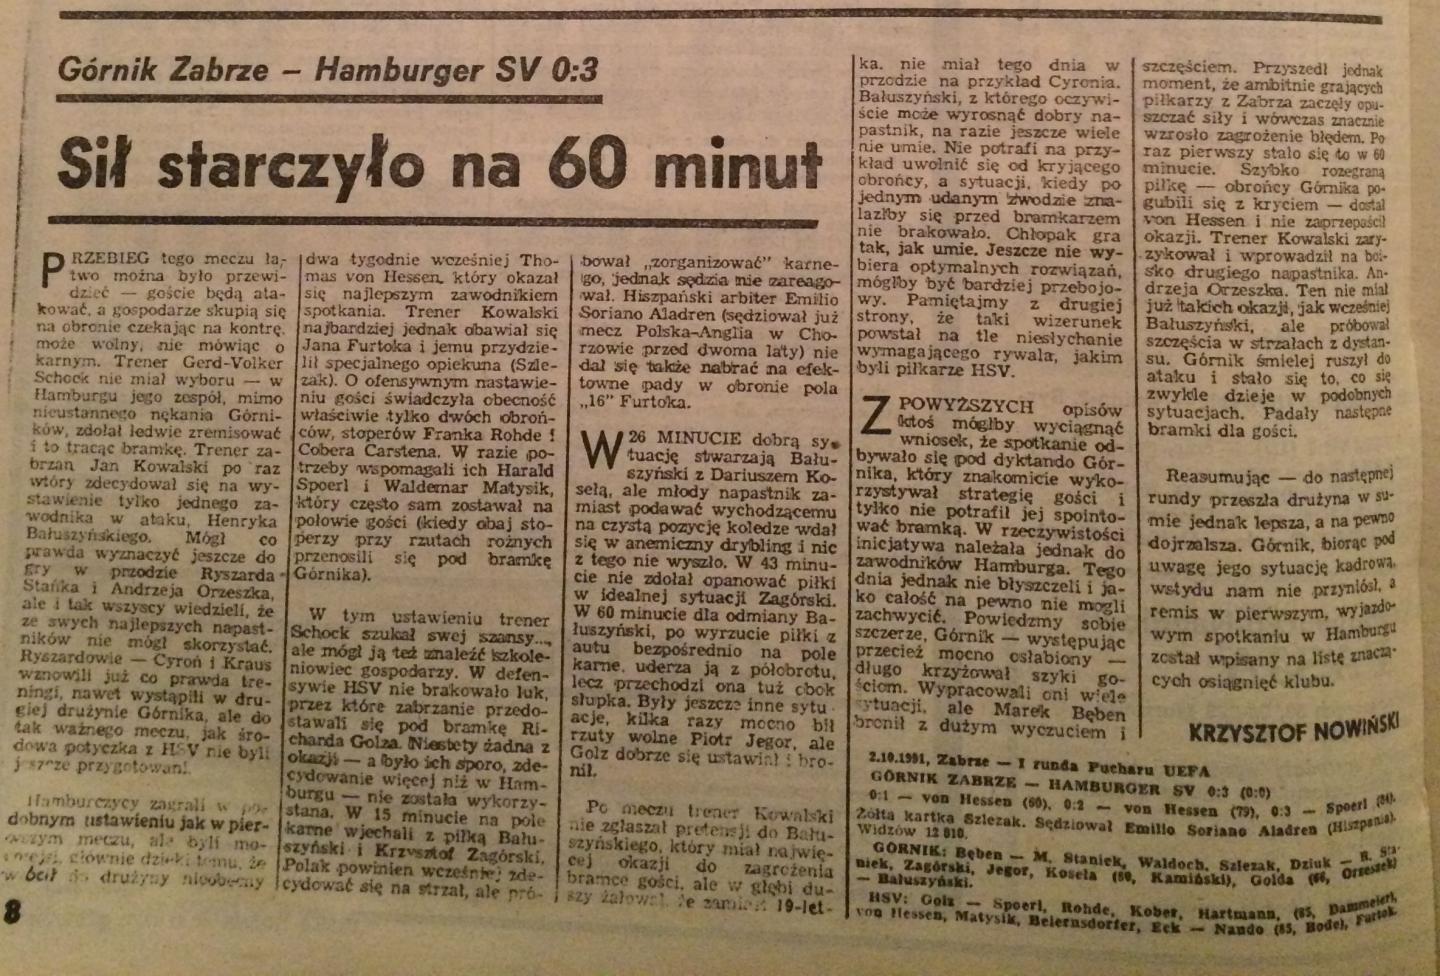 Piłka Nożna po Górnik Zabrze - Hamburger SV 0:3 (02.10.1991)